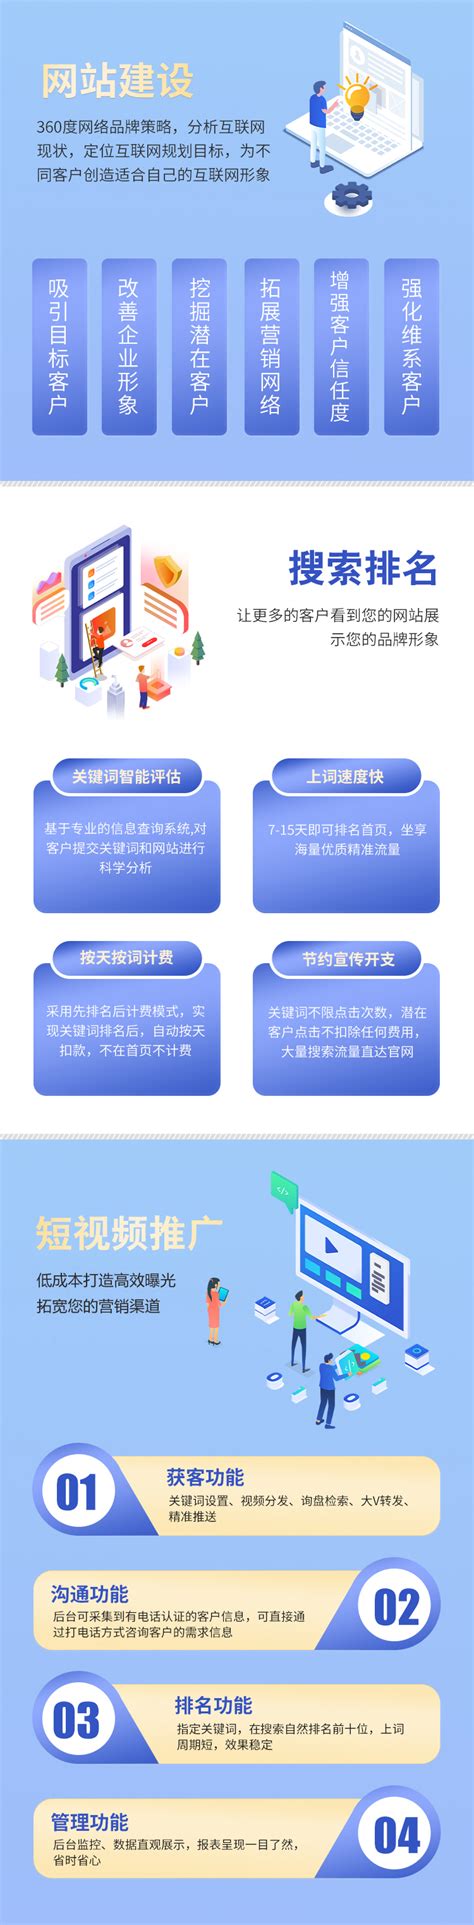 贵州网站建设技术方案制作